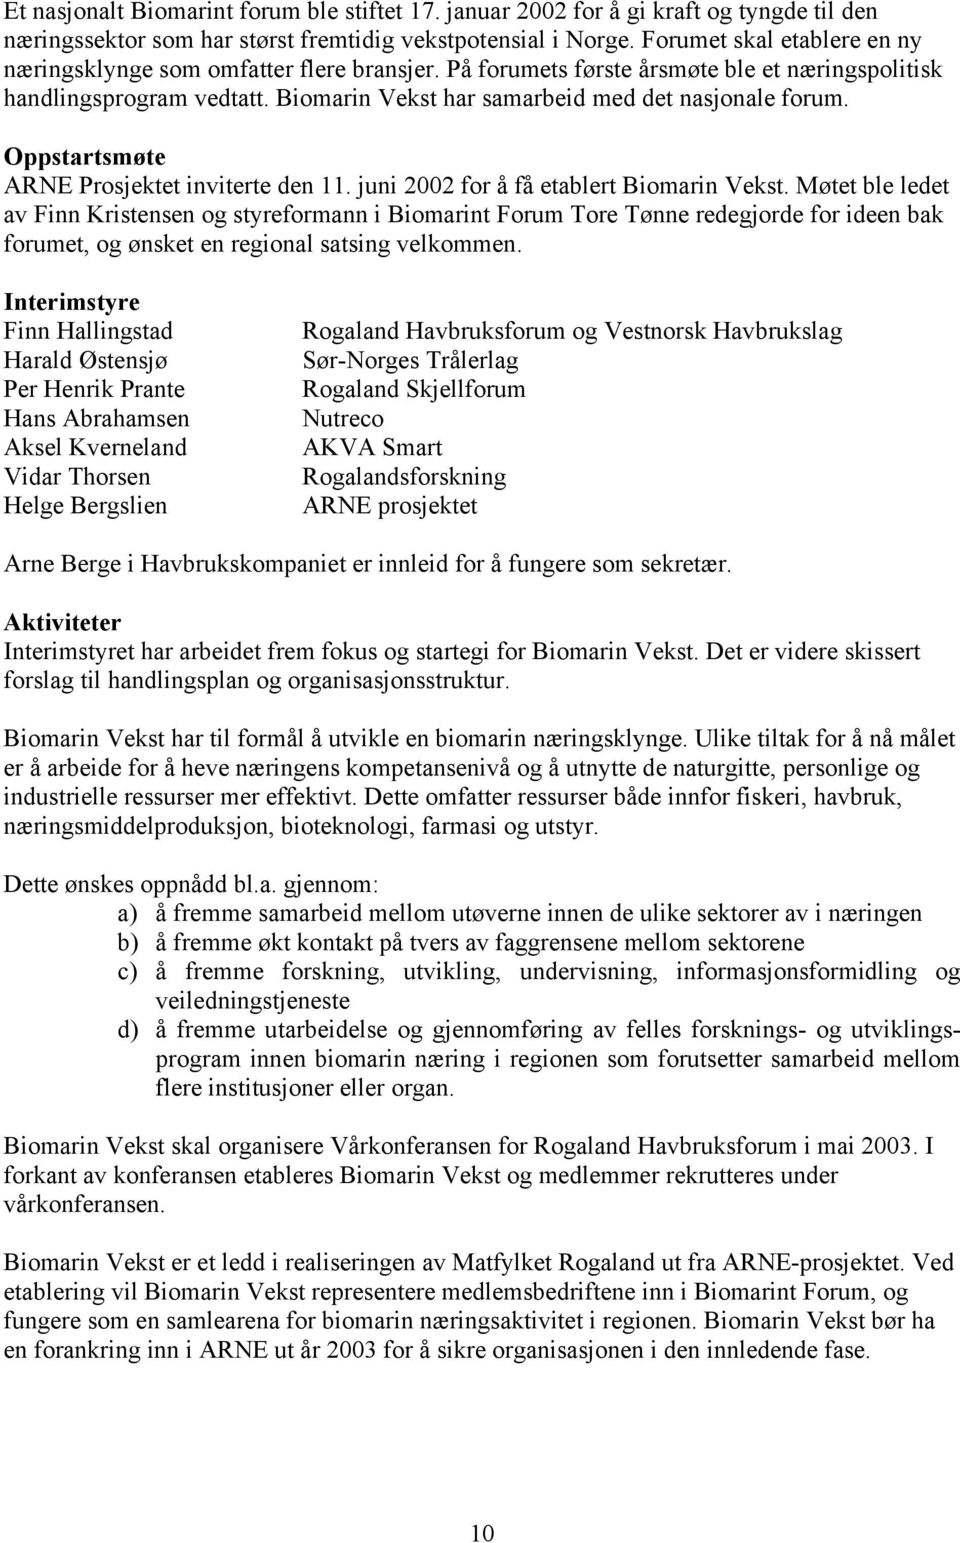 Oppstartsmøte ARNE Prosjektet inviterte den 11. juni 2002 for å få etablert Biomarin Vekst.